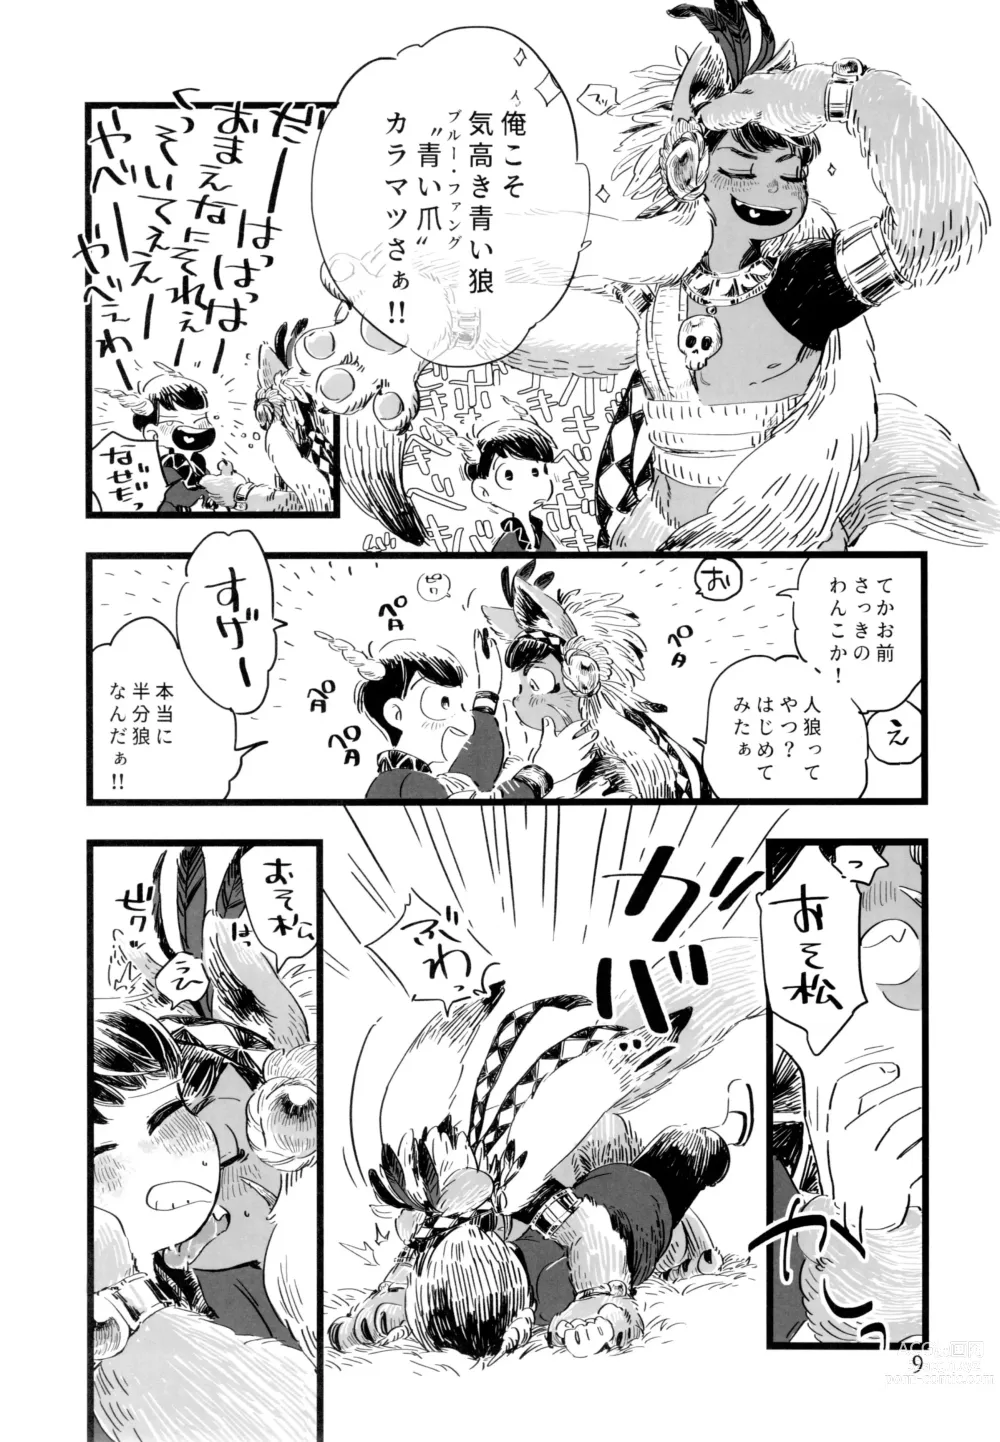 Page 9 of doujinshi Jinro and Tsuno Minzoku